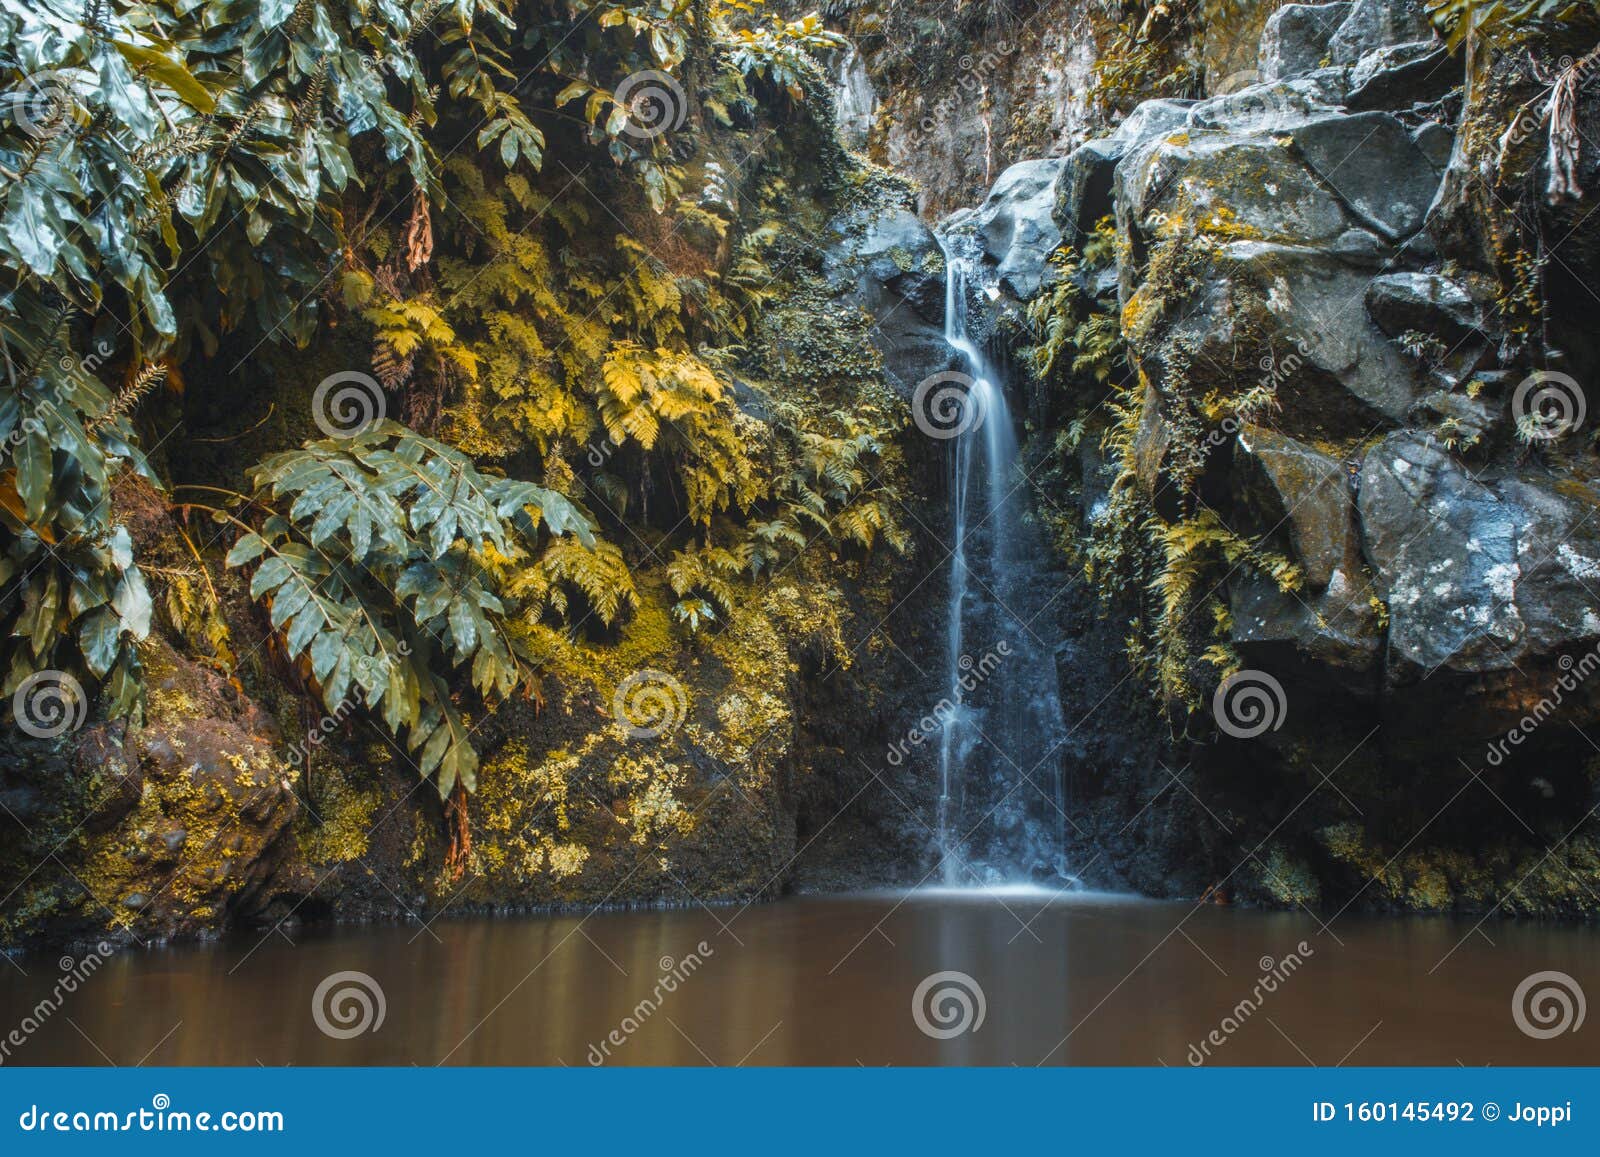 waterfall at parque natural da ribeira dos caldeiroes, sao miguel, azores, portugal